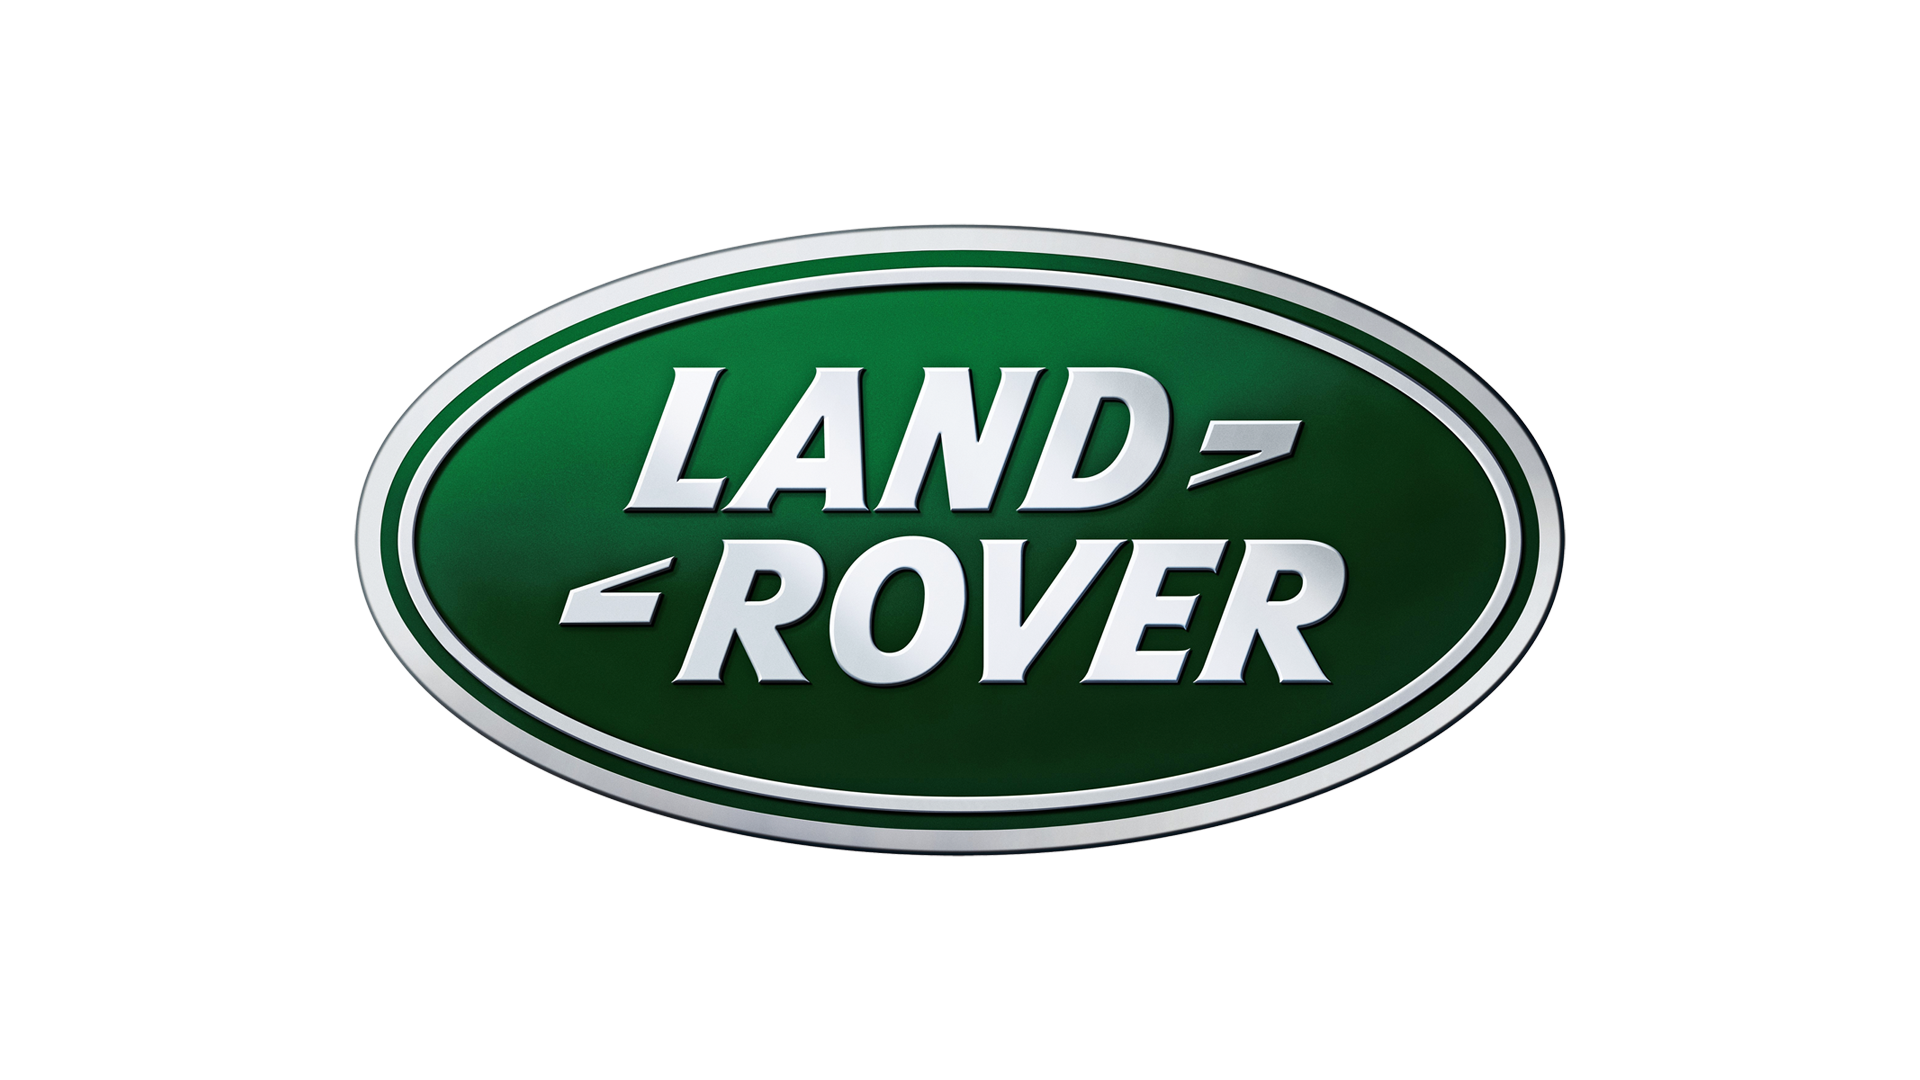 Land rover logo 2011 1920x1080